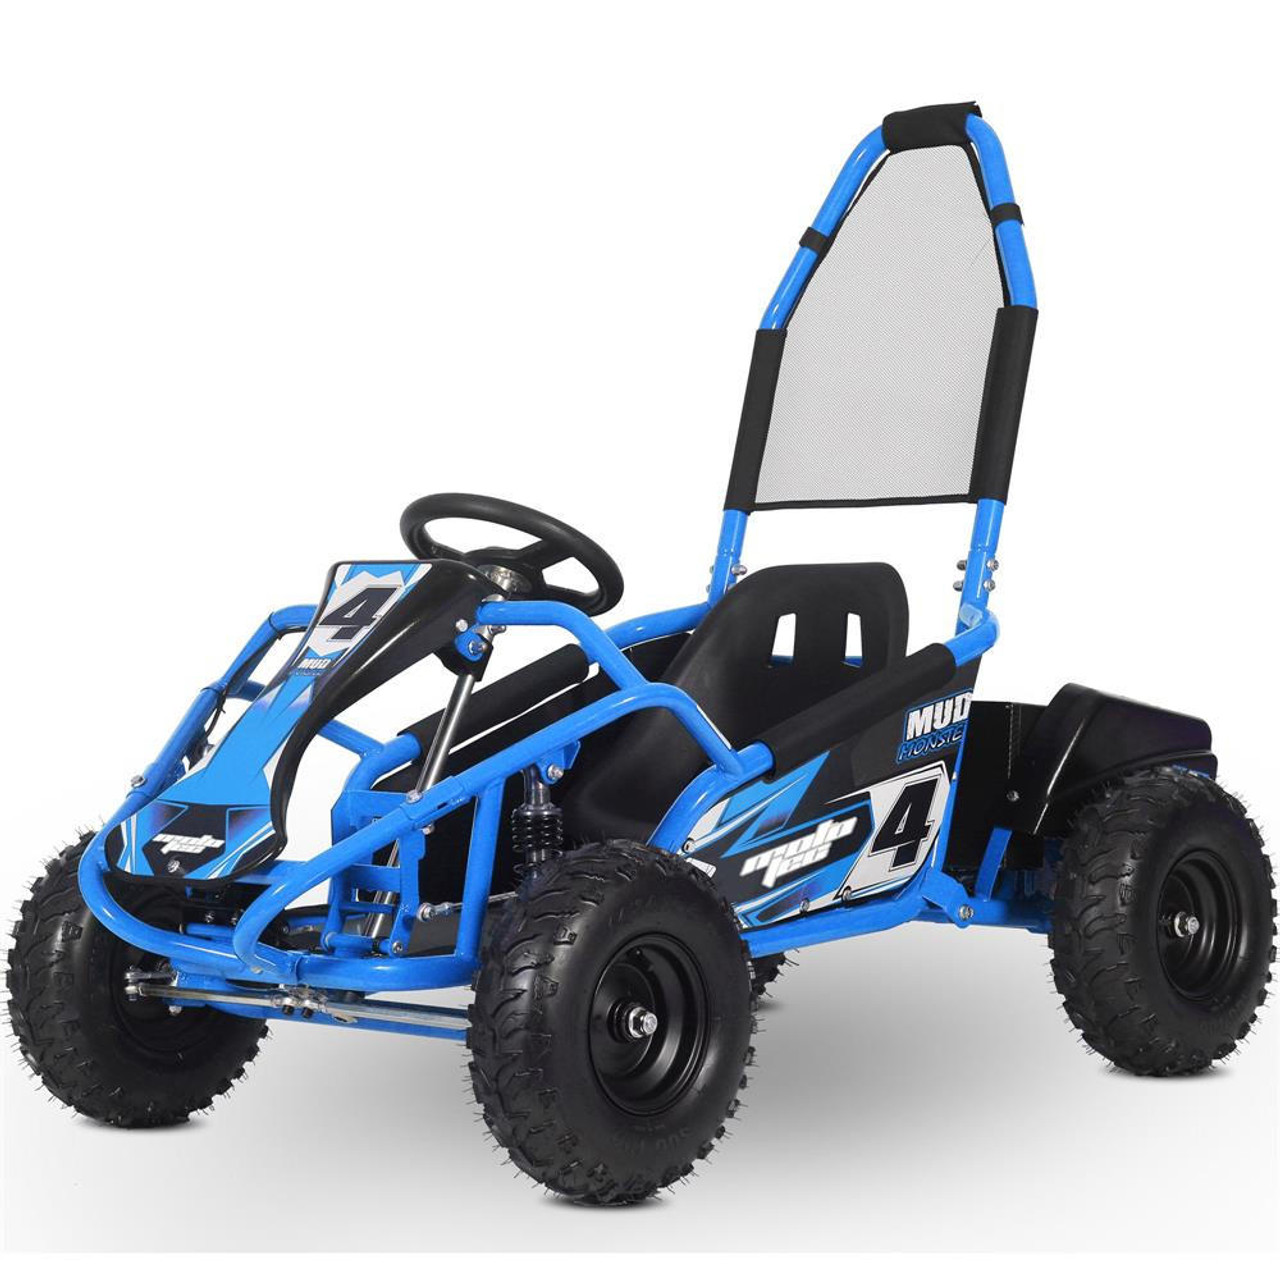  Mototec Mud Monster Kids Electric 48v 1000w Go Kart Full Suspension Blue 